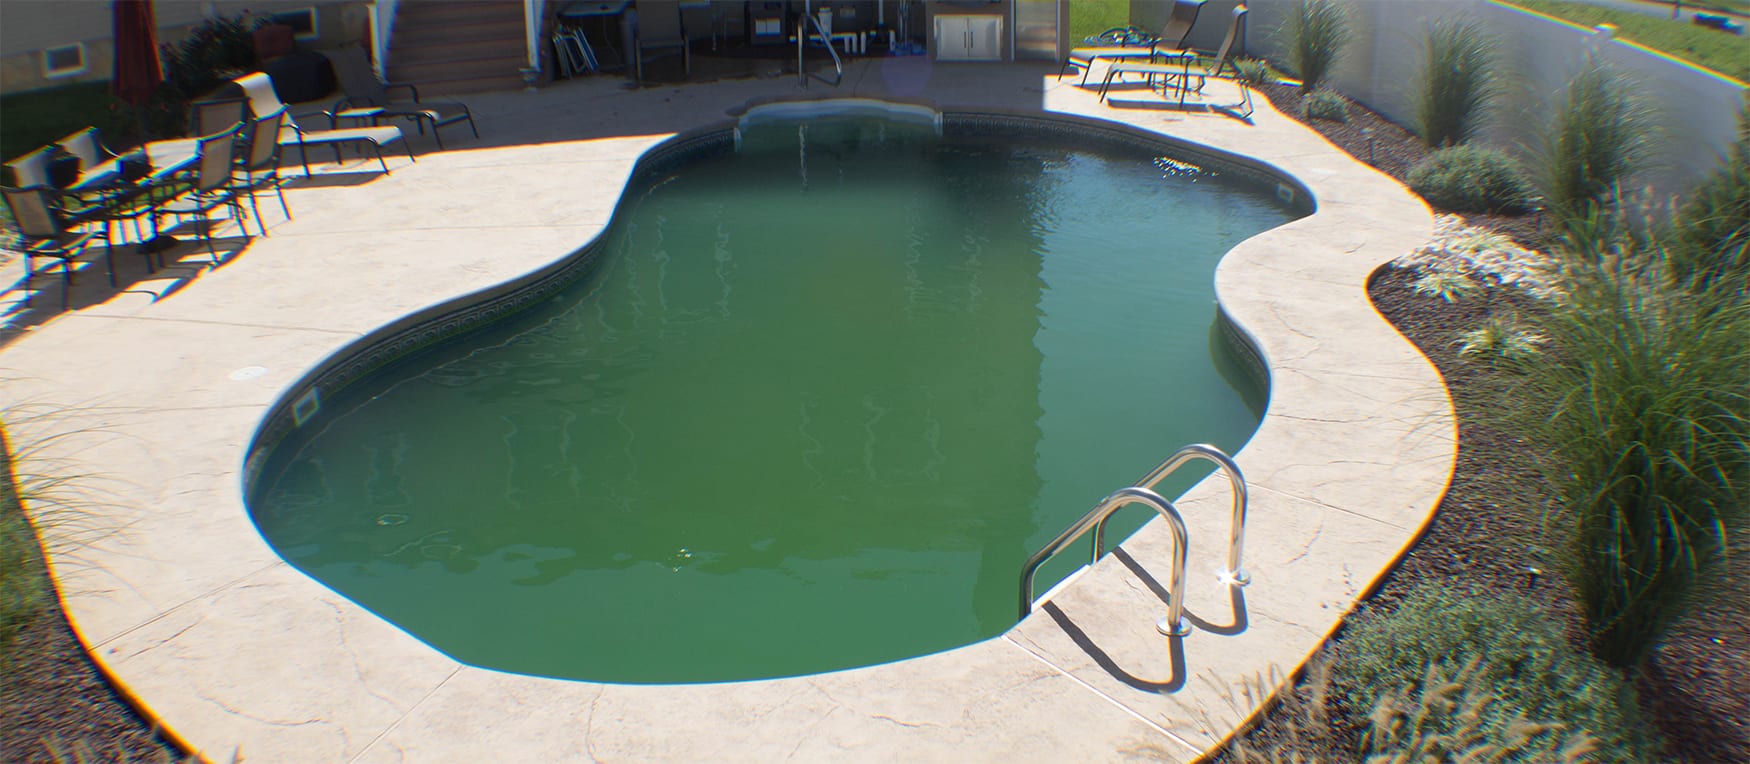 Green Algae filled inground pool